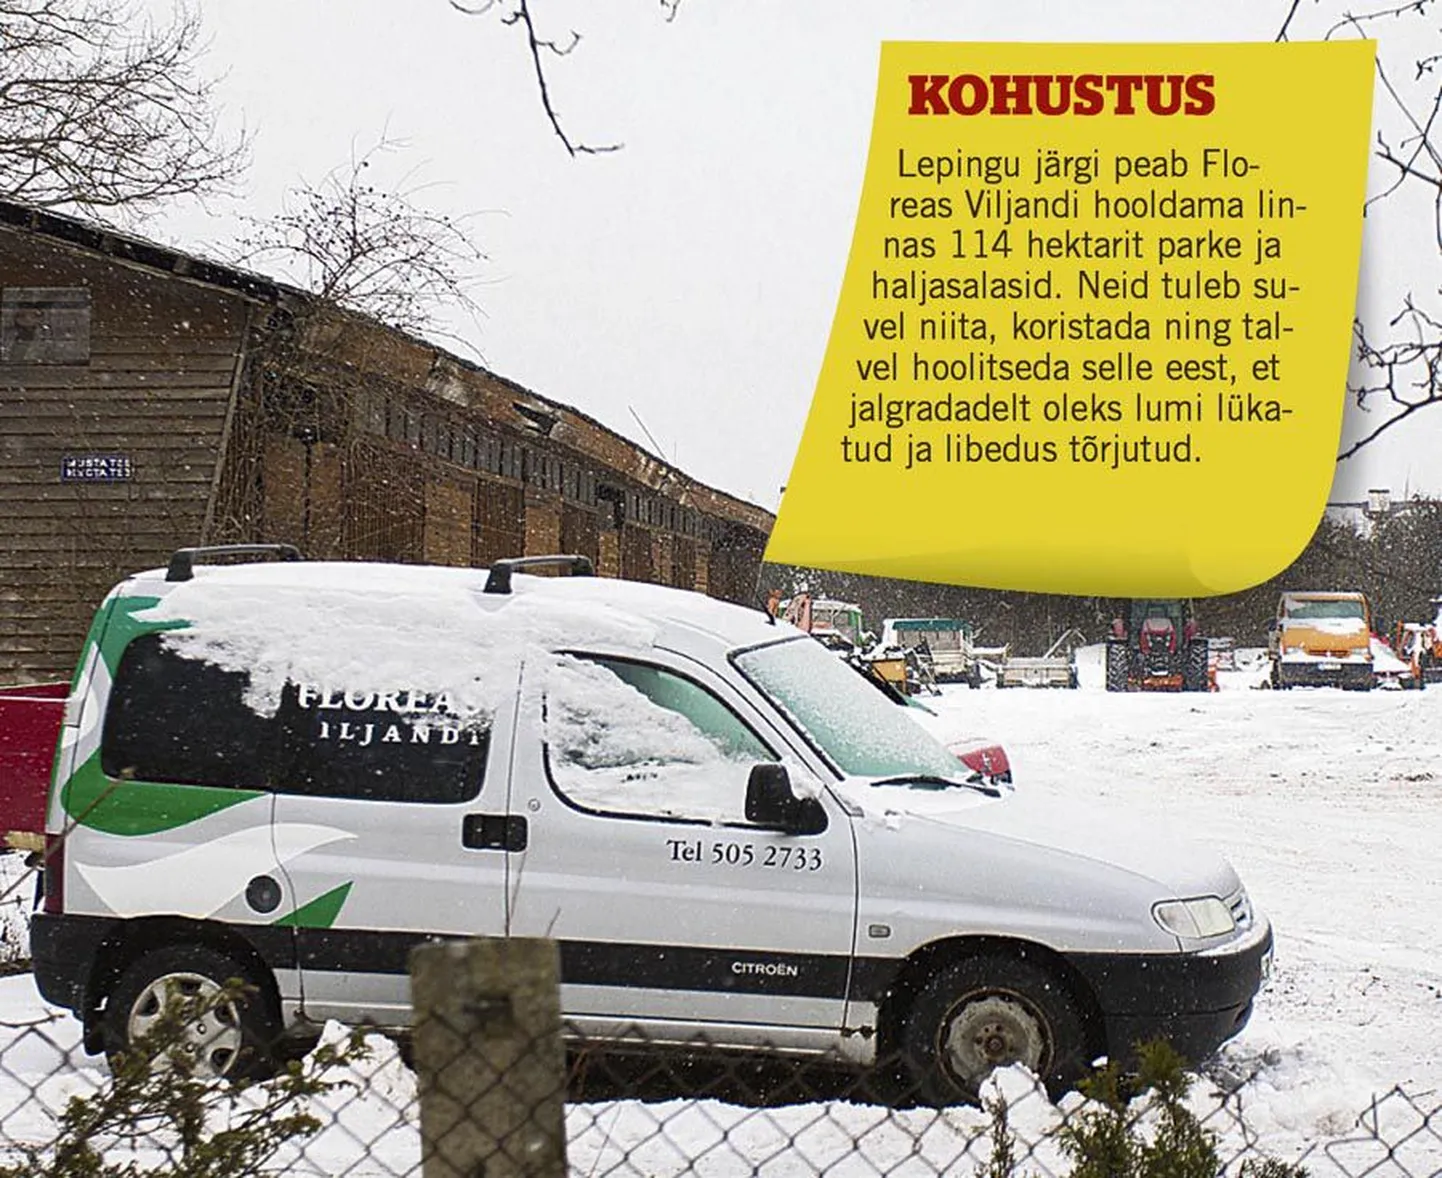 Heakorrafirma Floreas Viljandi on sama omaniku juhtimisel linnas tegutsenud juba 1995. aastast alates ning kuni 2011. aastani oli ettevõtte väitel linnaga suhtlemine sõbralik. Sealtmaalt alates on linn määranud firmale vähemalt 15 karistust.